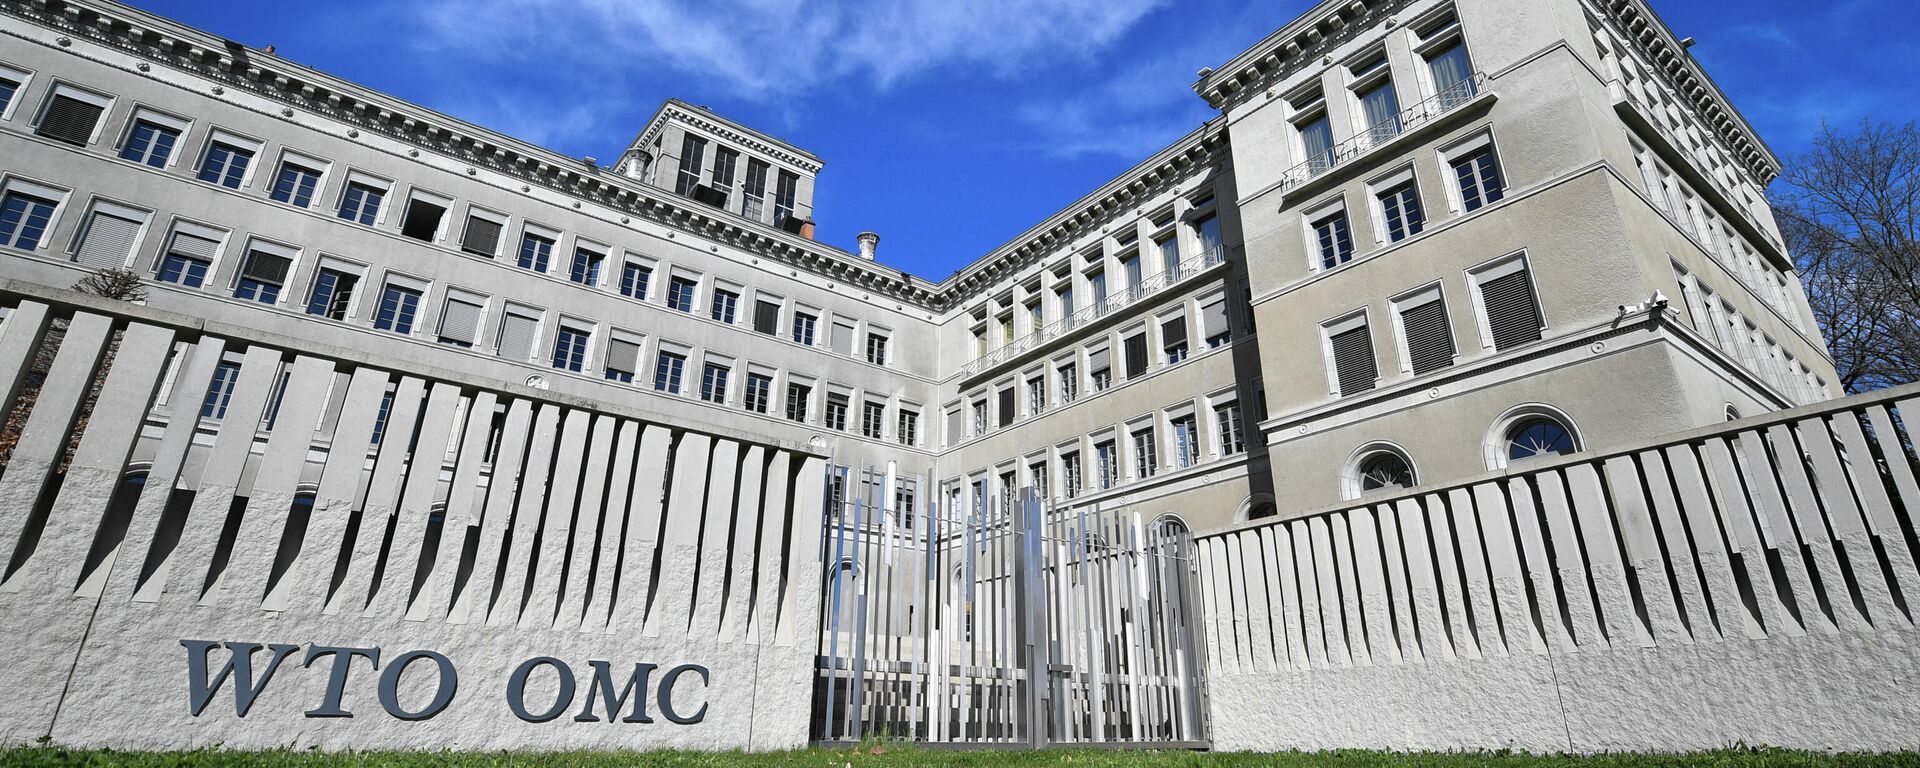 Штаб-квартира Всемирной торговой организации (ВТО) в Женеве - Sputnik Узбекистан, 1920, 13.05.2021